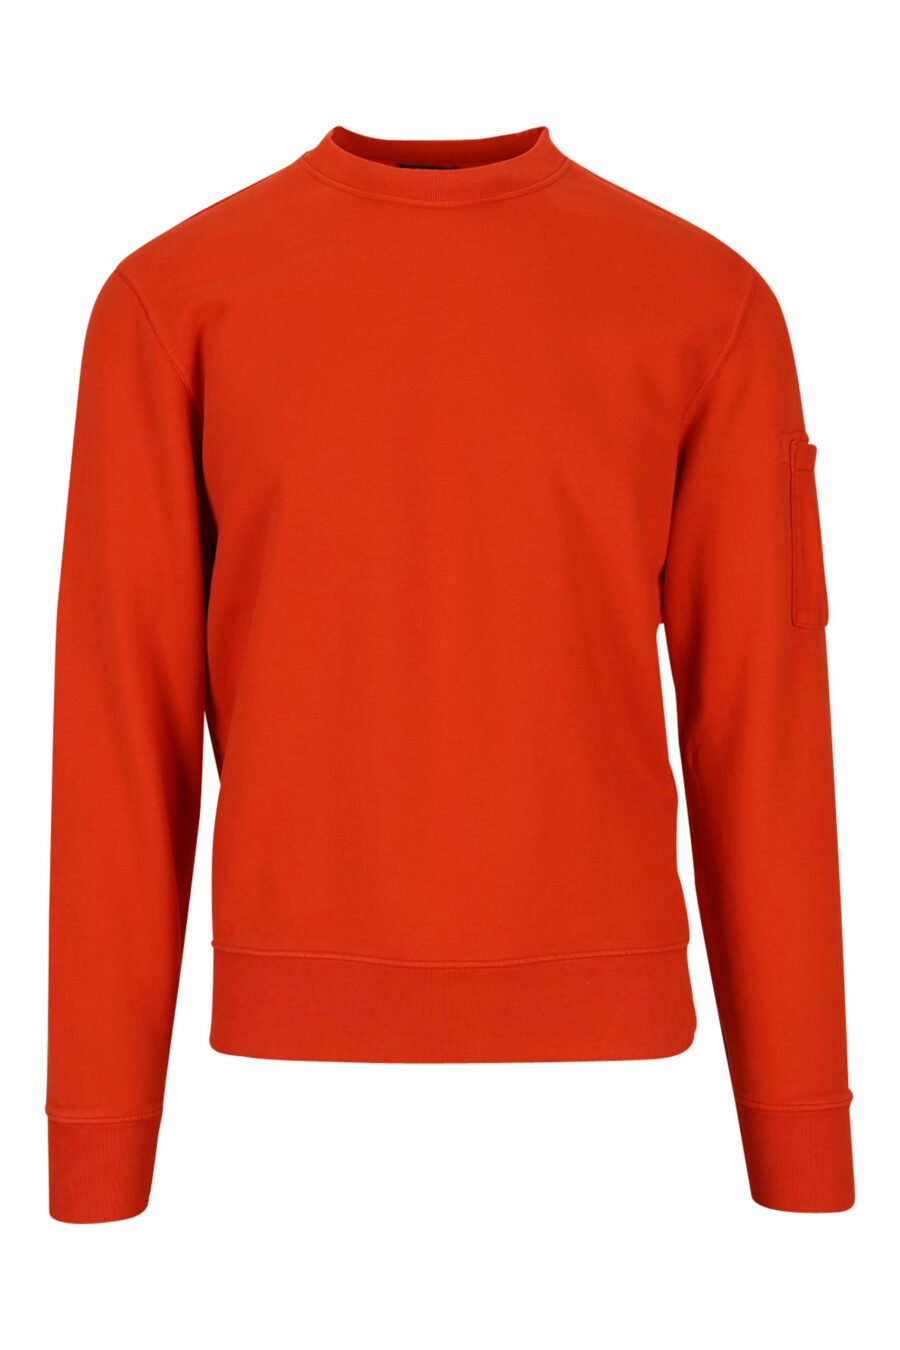 Orangefarbenes Sweatshirt mit seitlichem Linsenlogo - 7620943598254 skaliert